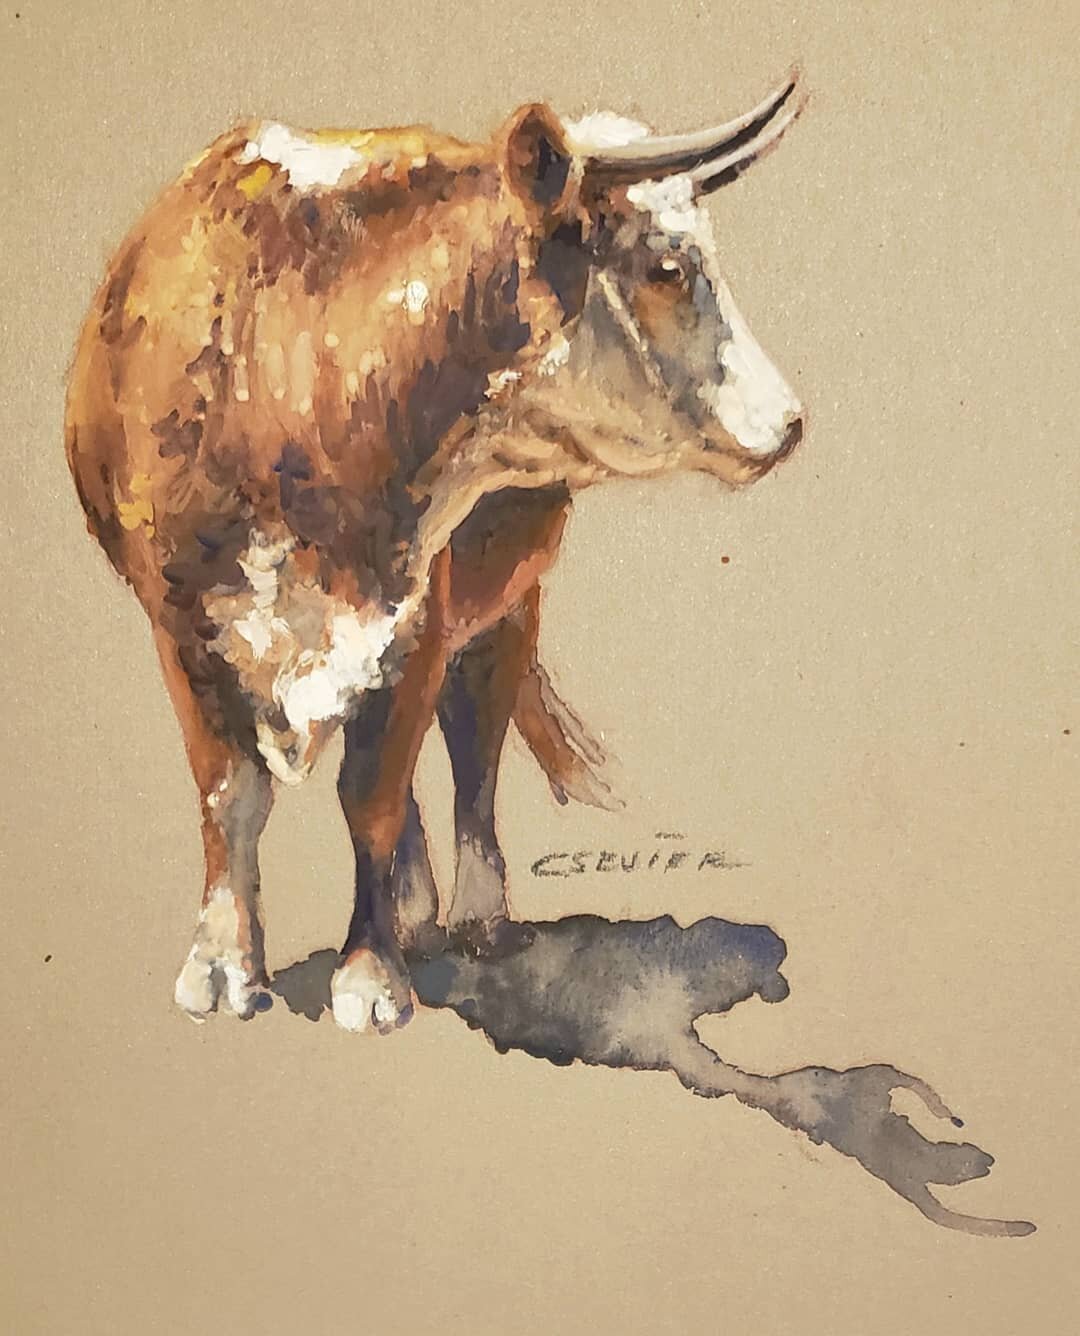 Texas Range Cow

#gouachepainting #chessneysevier #westernart #hornedcow